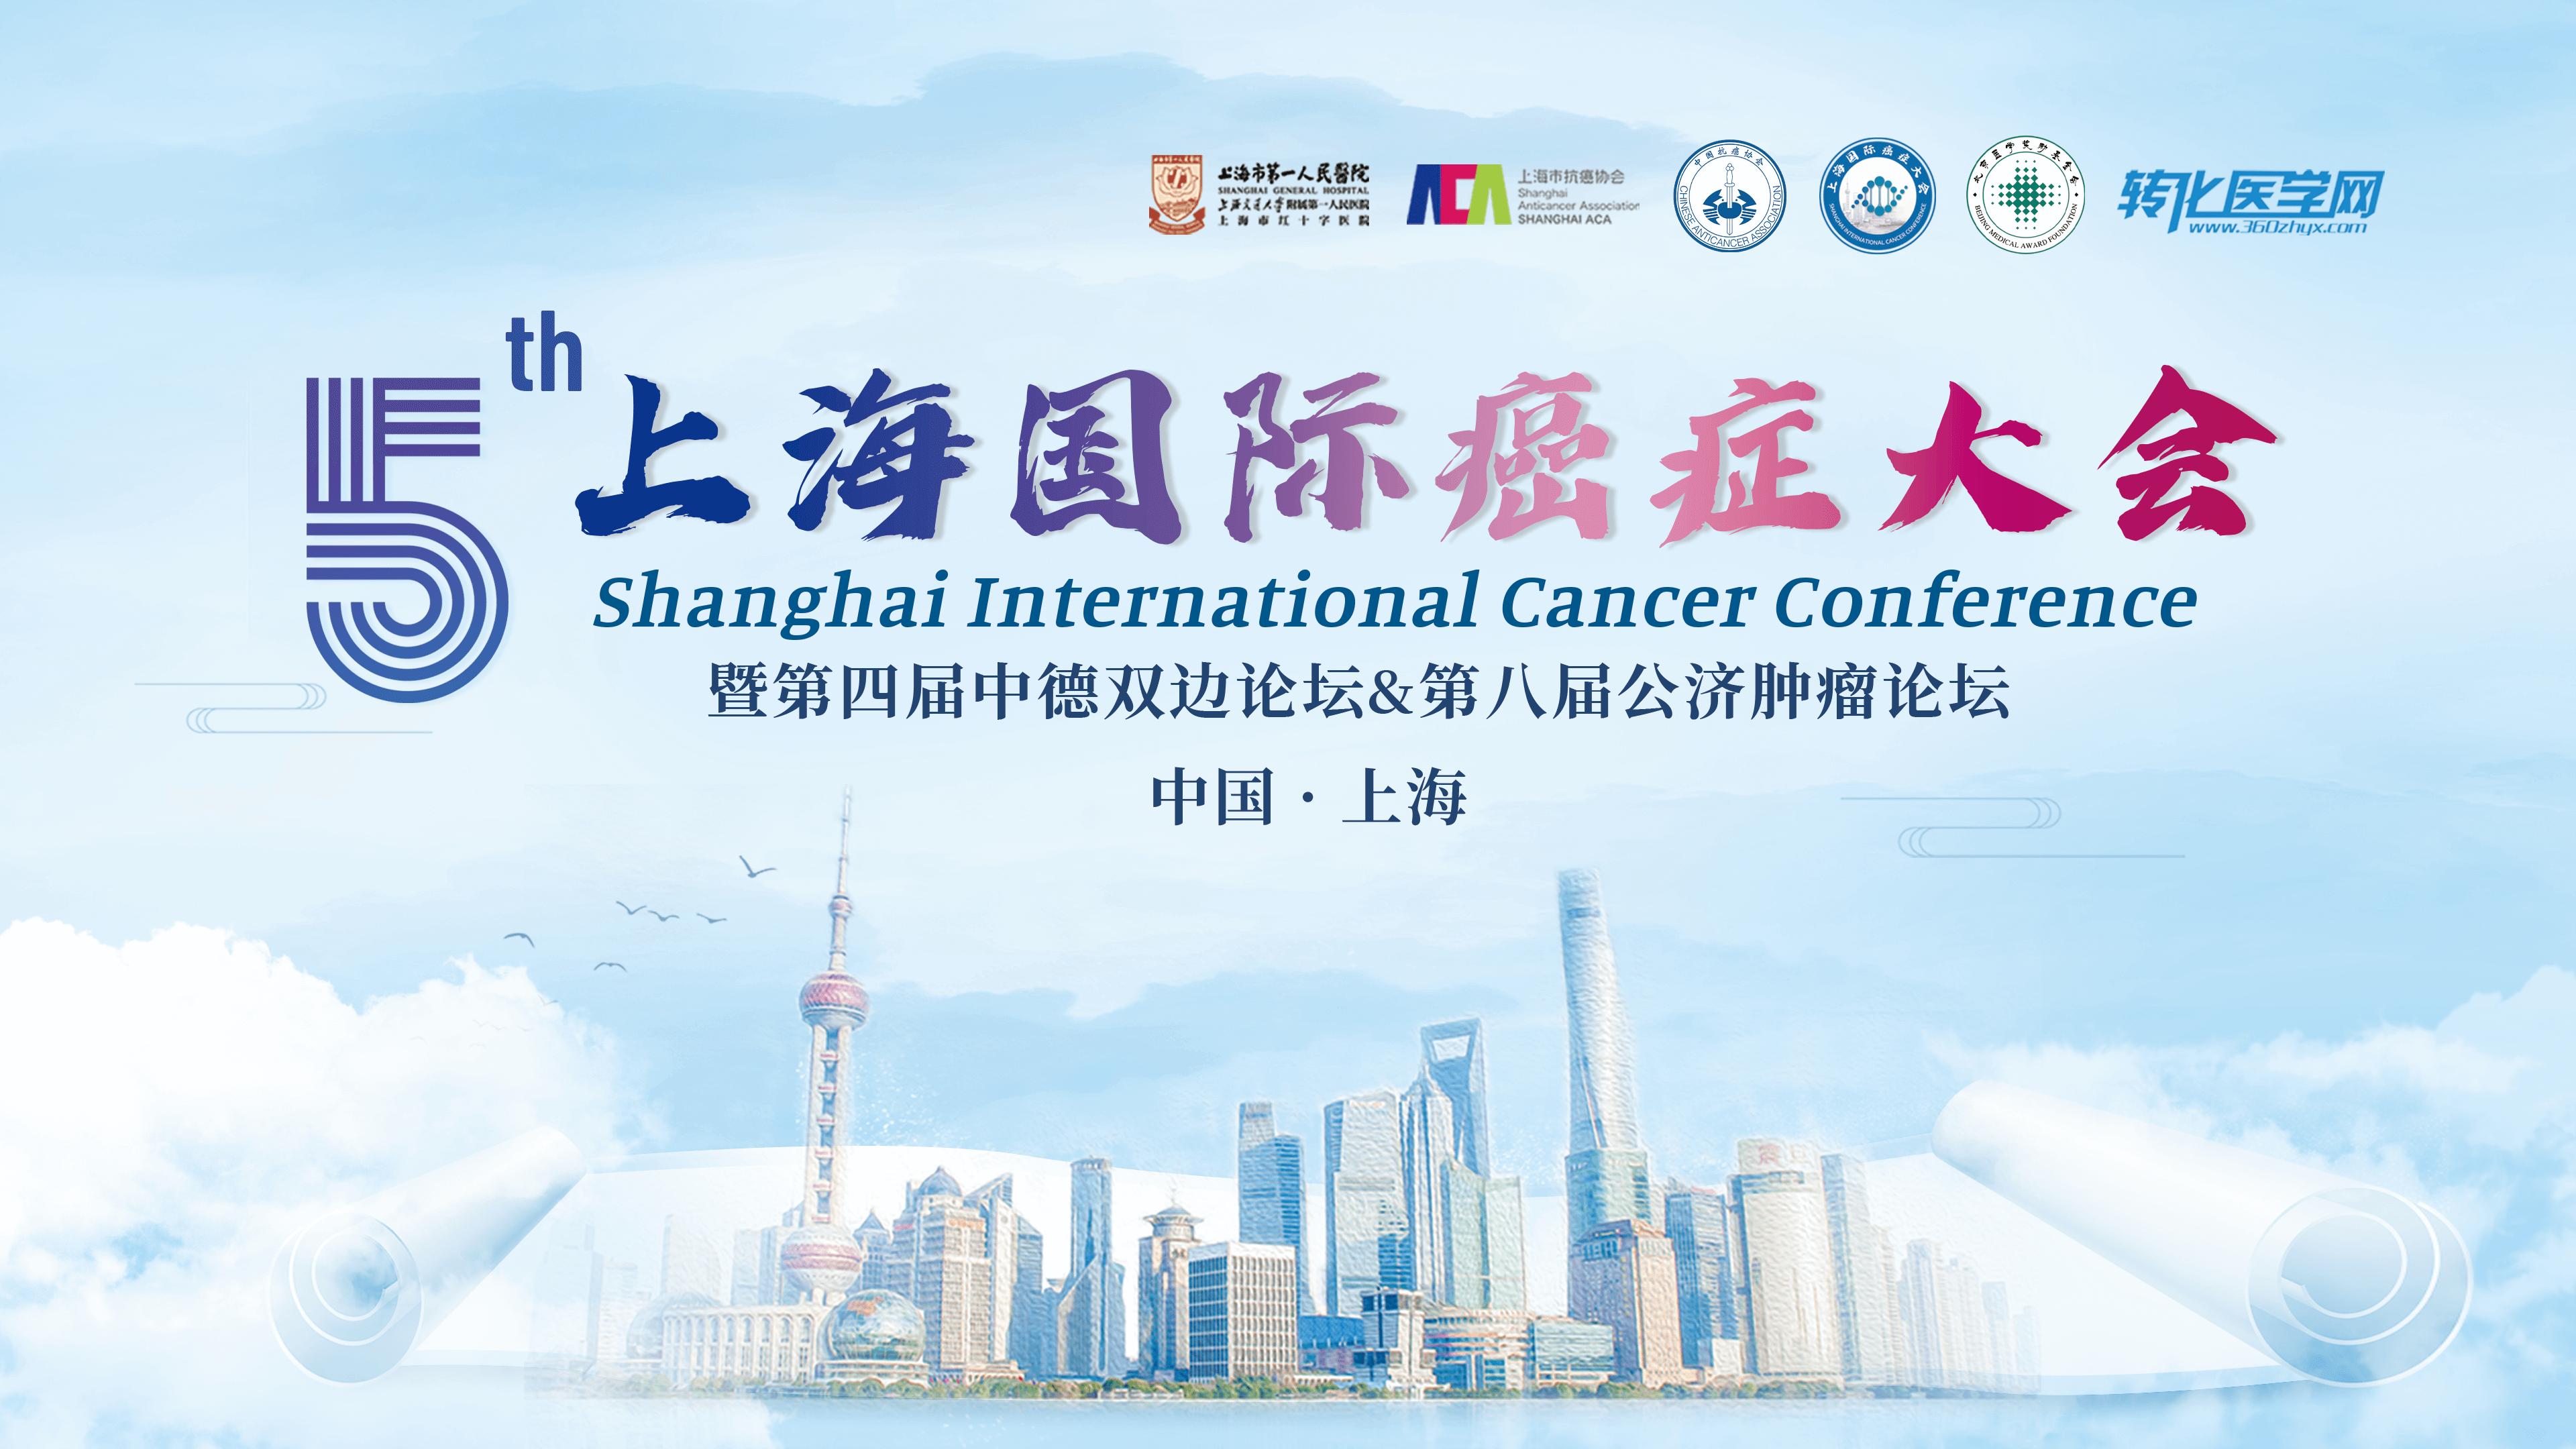 会议通知 |寻因生物邀您共赴第五届上海国际癌症大会